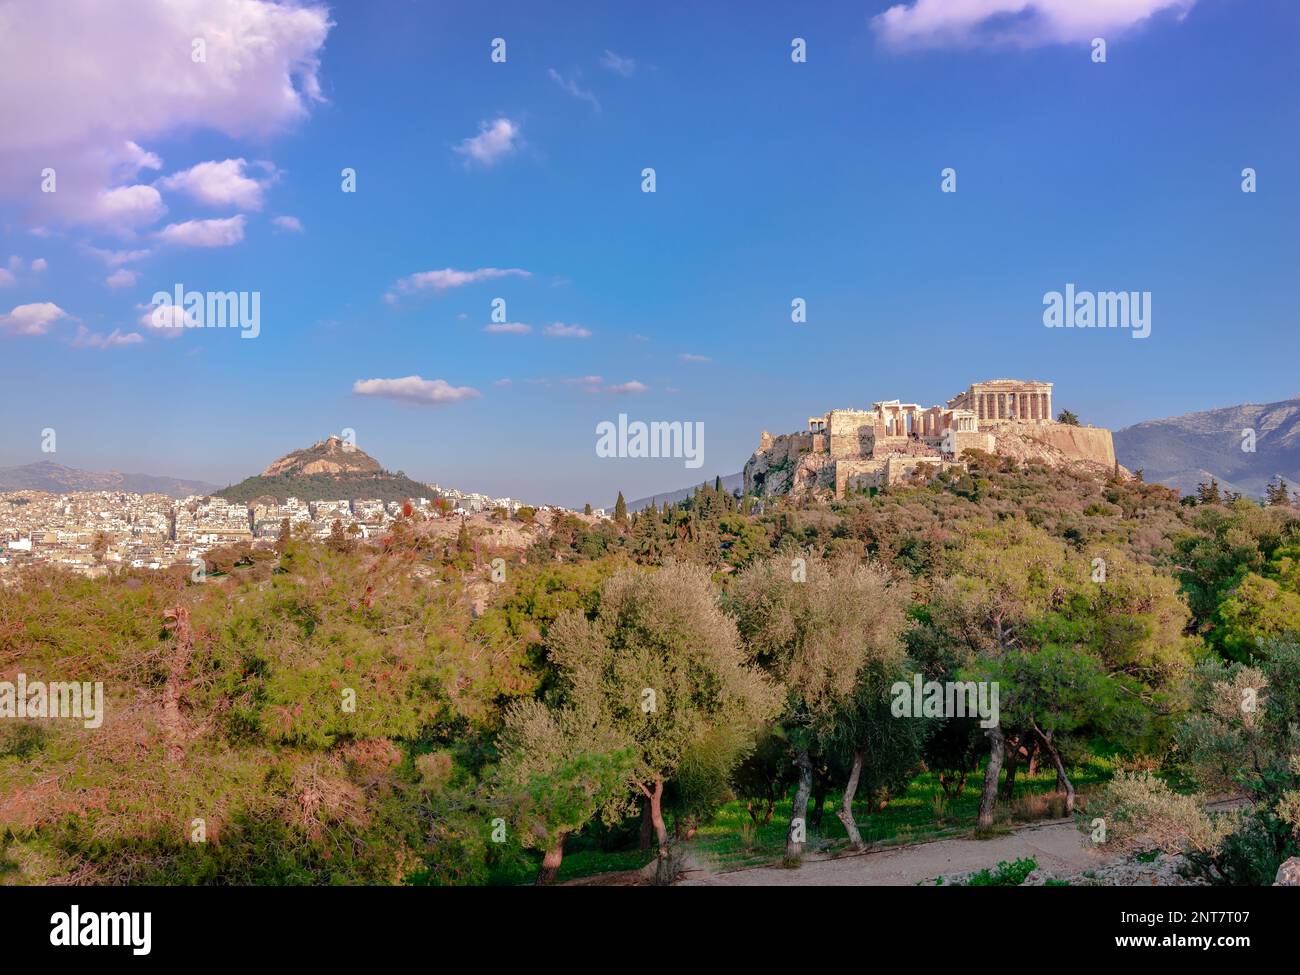 Vista di Atene vista dal Pnyx, la collina storica nella capitale della Grecia. L'Acropoli di Atene e il Monte Licabetto dominano il quadro. Foto Stock